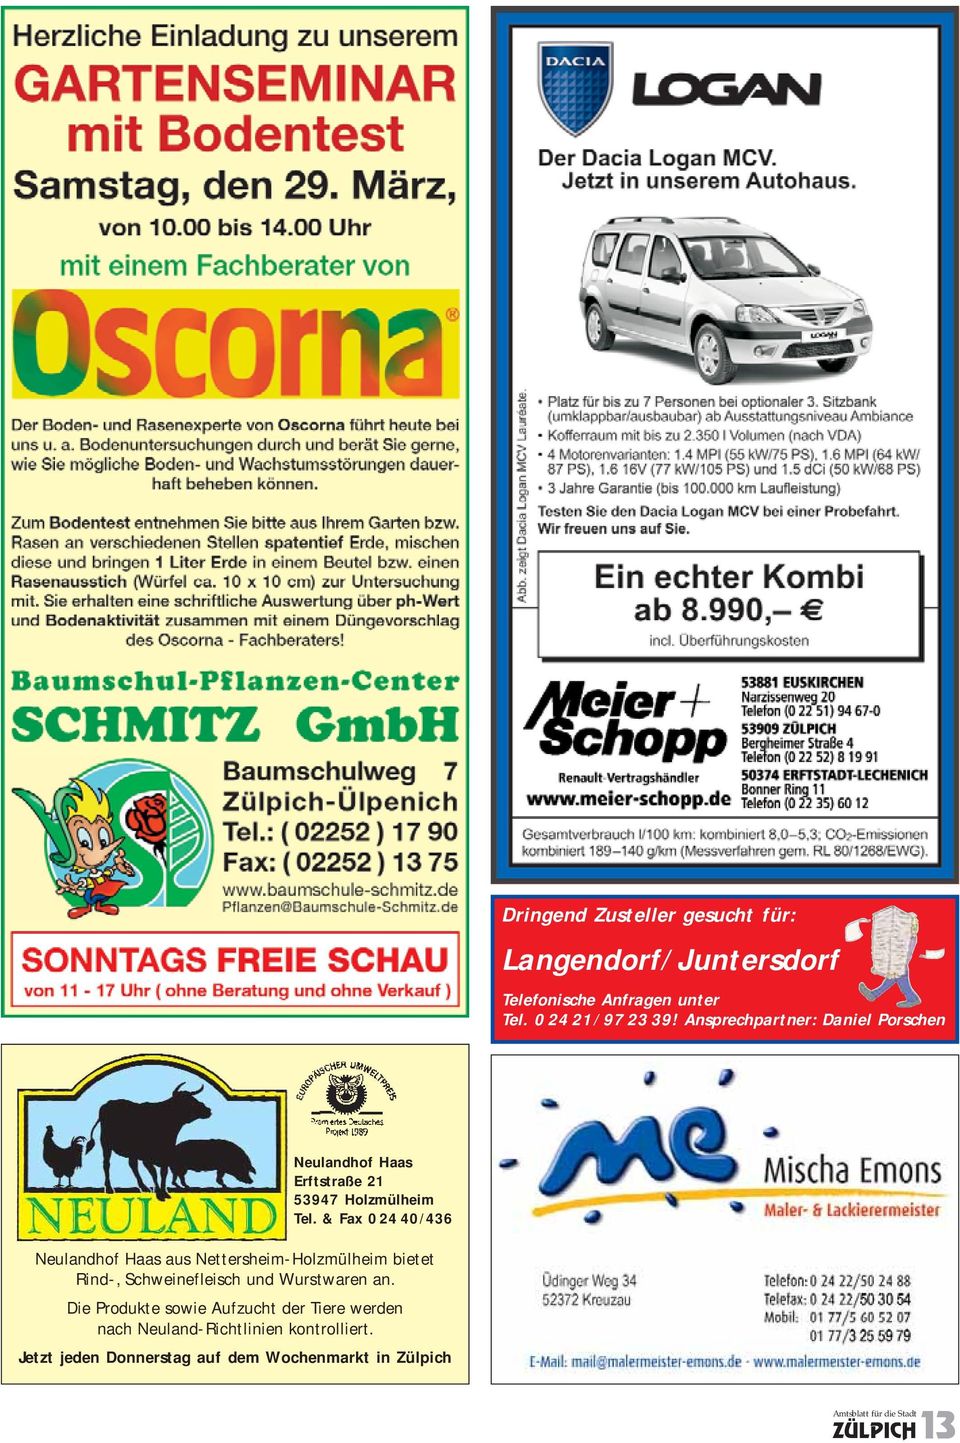 & Fax 0 24 40/436 Neulandhof Haas aus Nettersheim-Holzmülheim bietet Rind-, Schweinefleisch und Wurstwaren an.